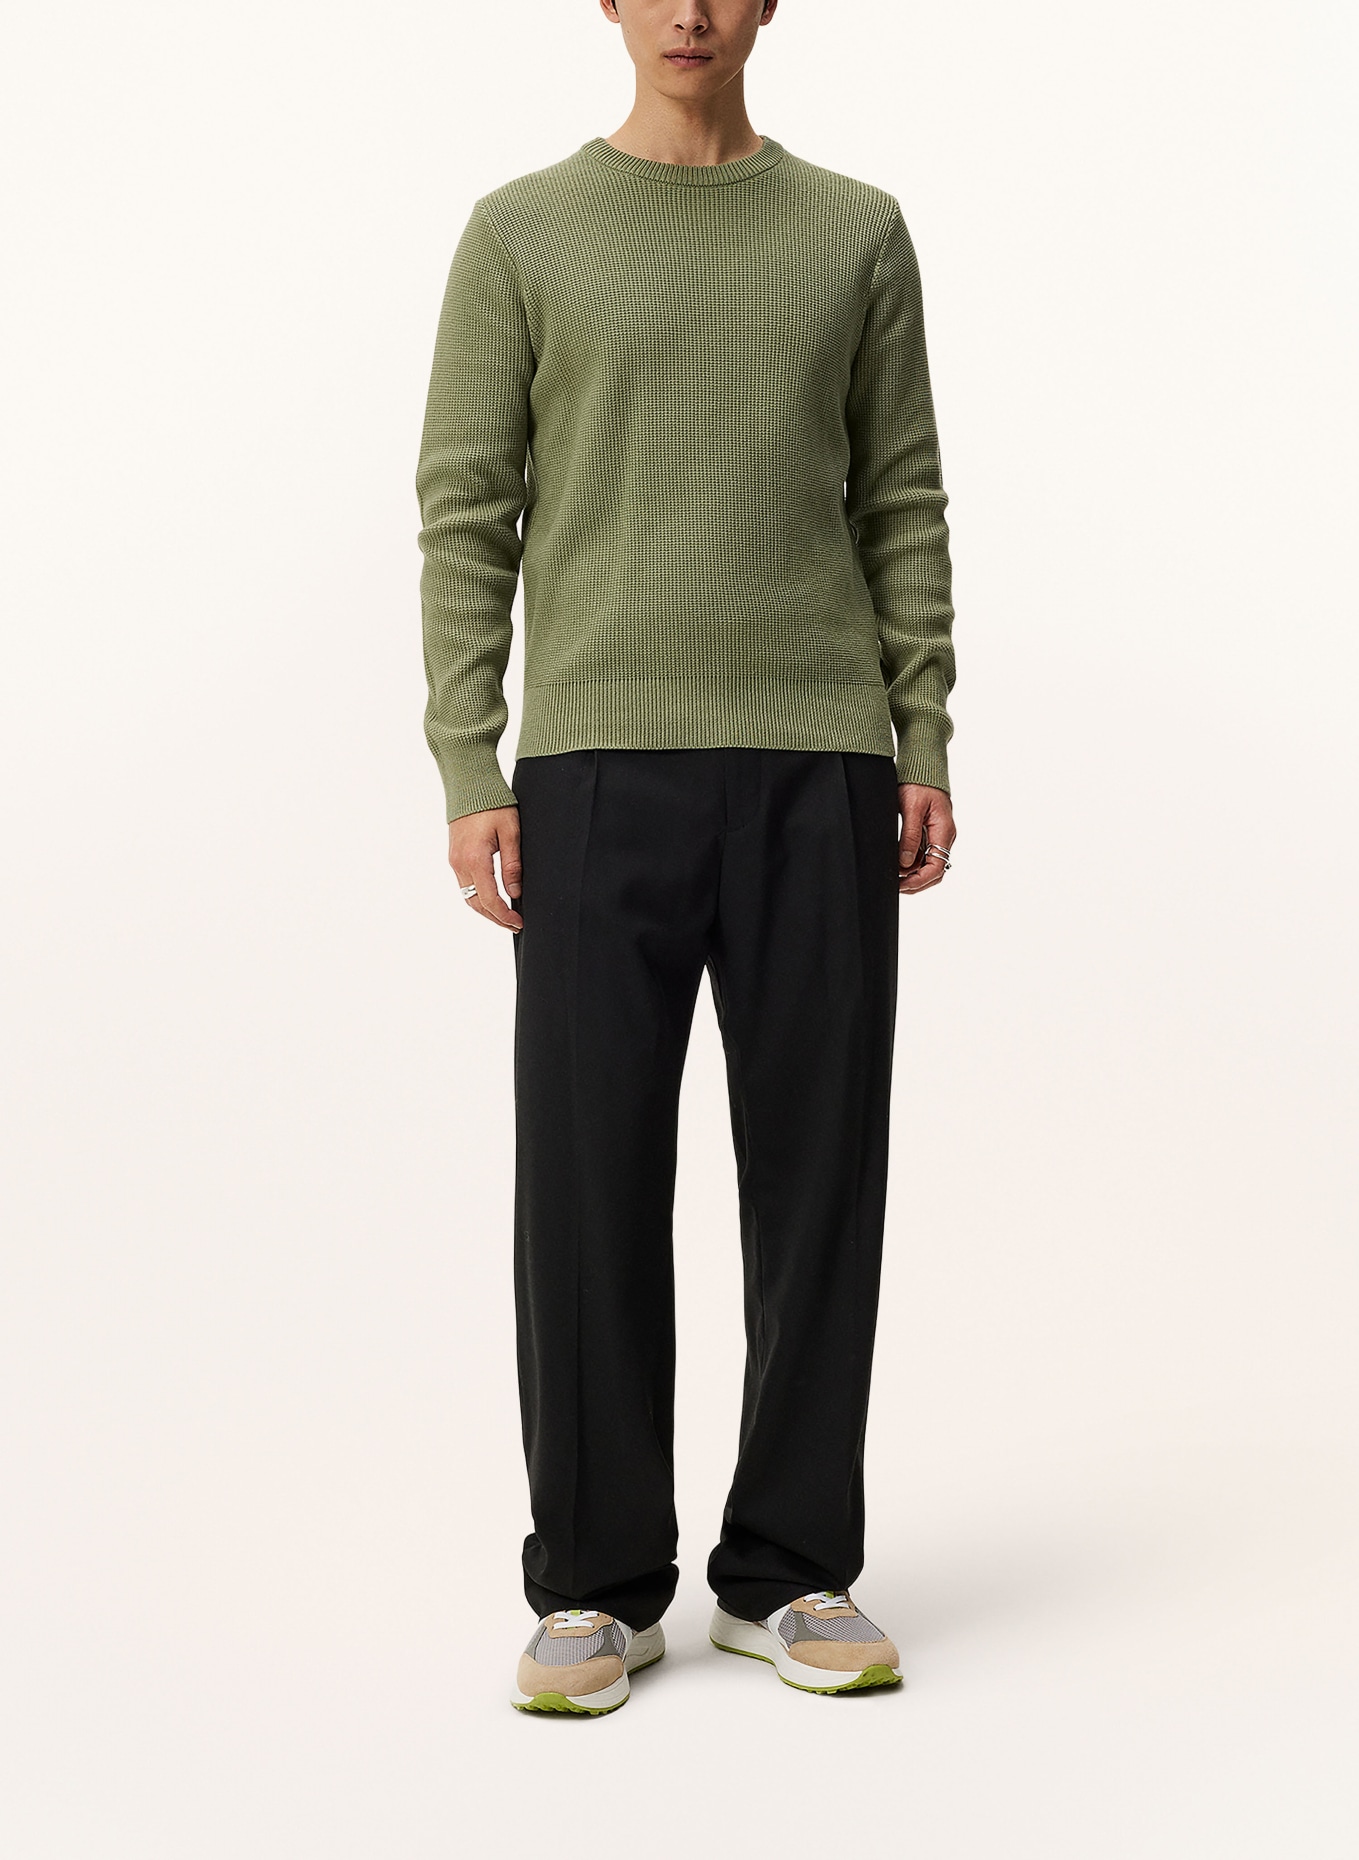 J.LINDEBERG Sweater, Color: OLIVE (Image 2)